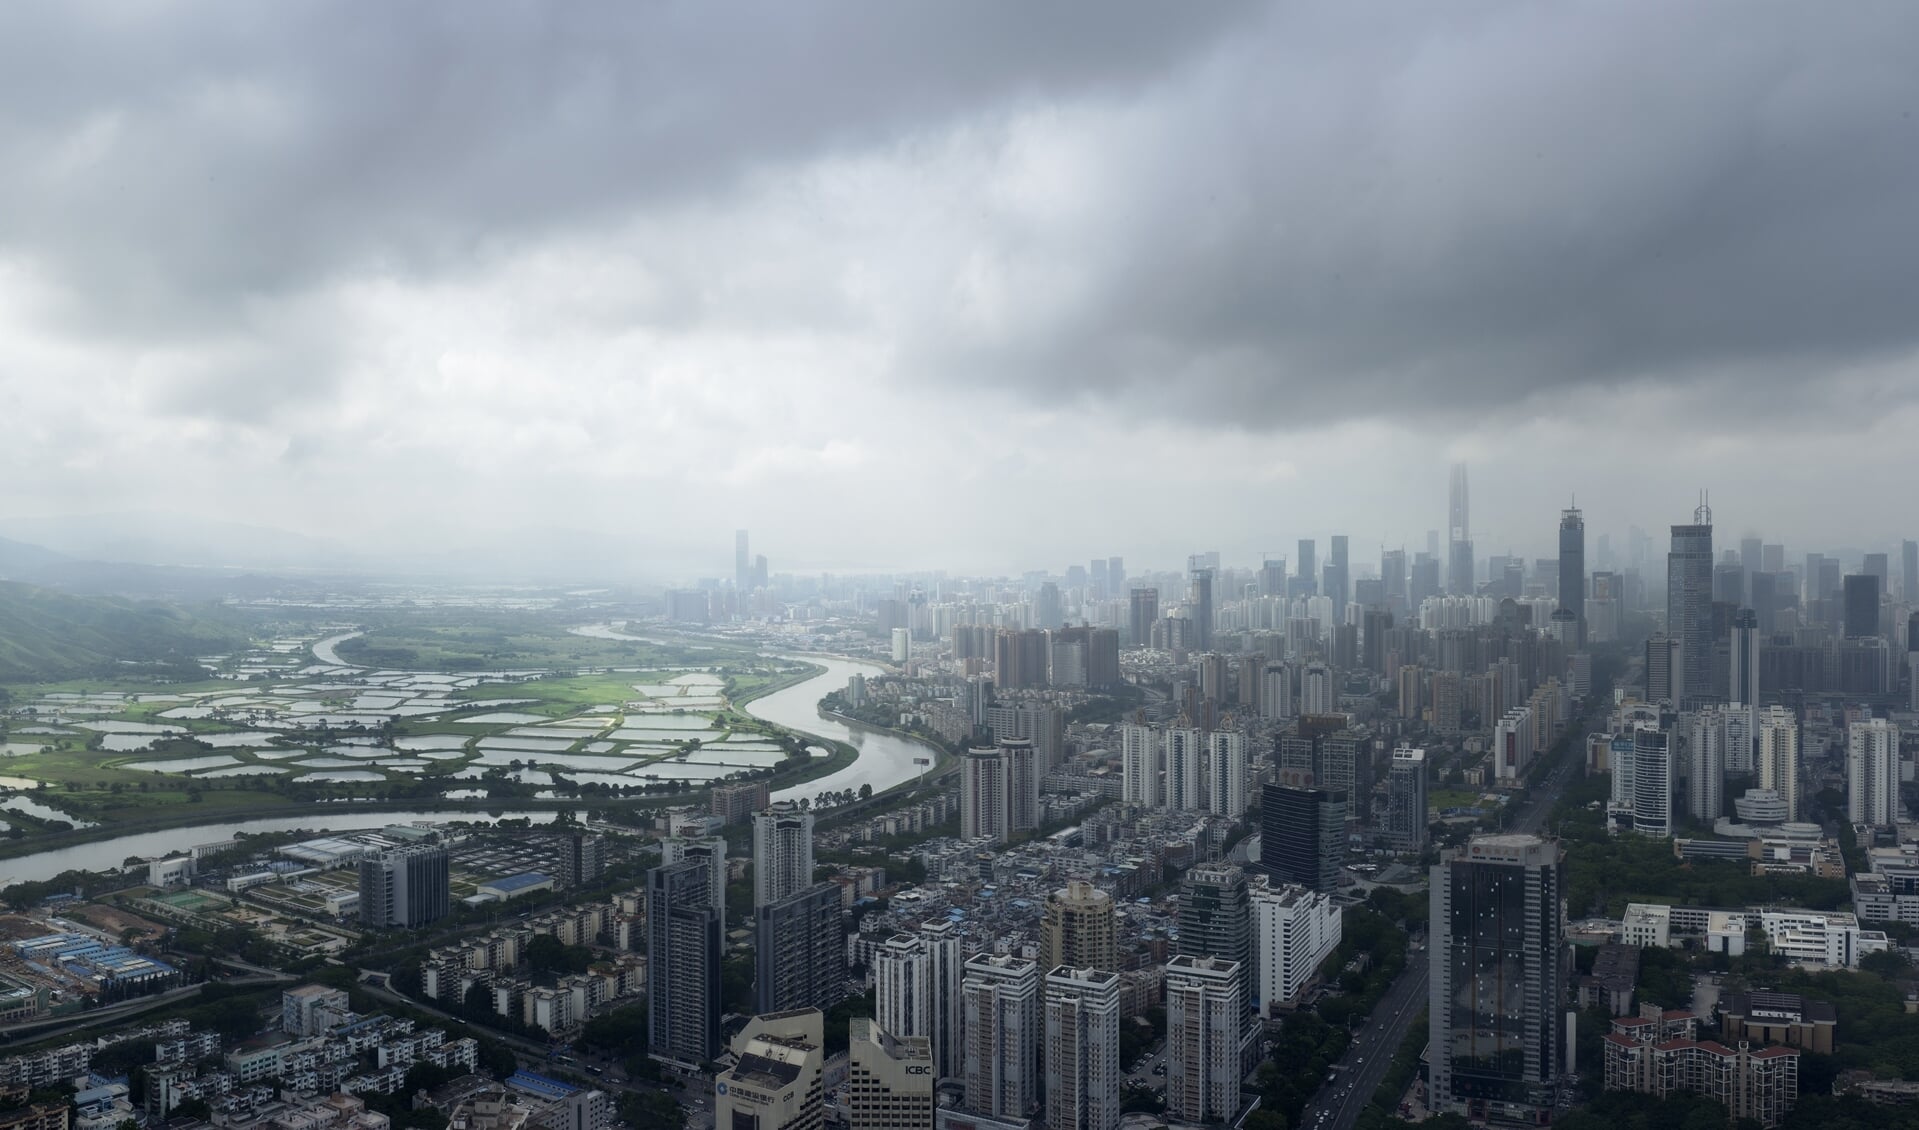 De Chinese miljoenenstad Shenzhen verbeeld in ‘Entr'acte’ van Frank van der Salm.